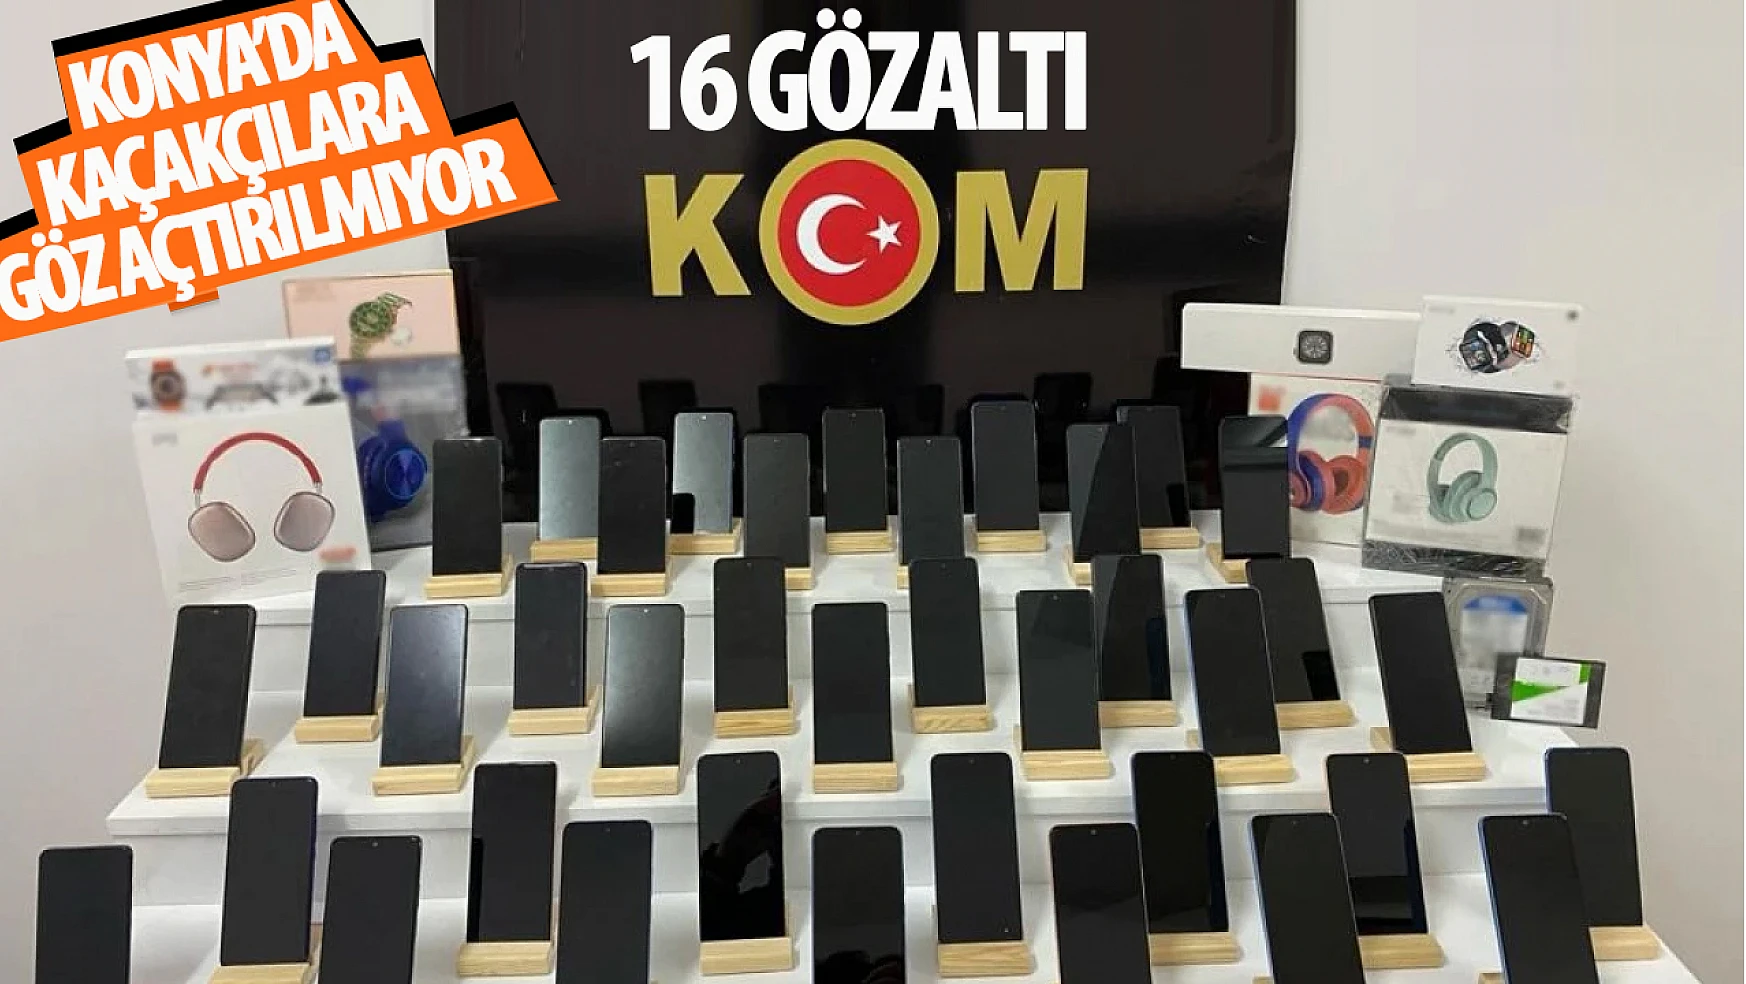 Konya'nın merkezlerine kaçakçılık operasyonu: 16 gözaltı!